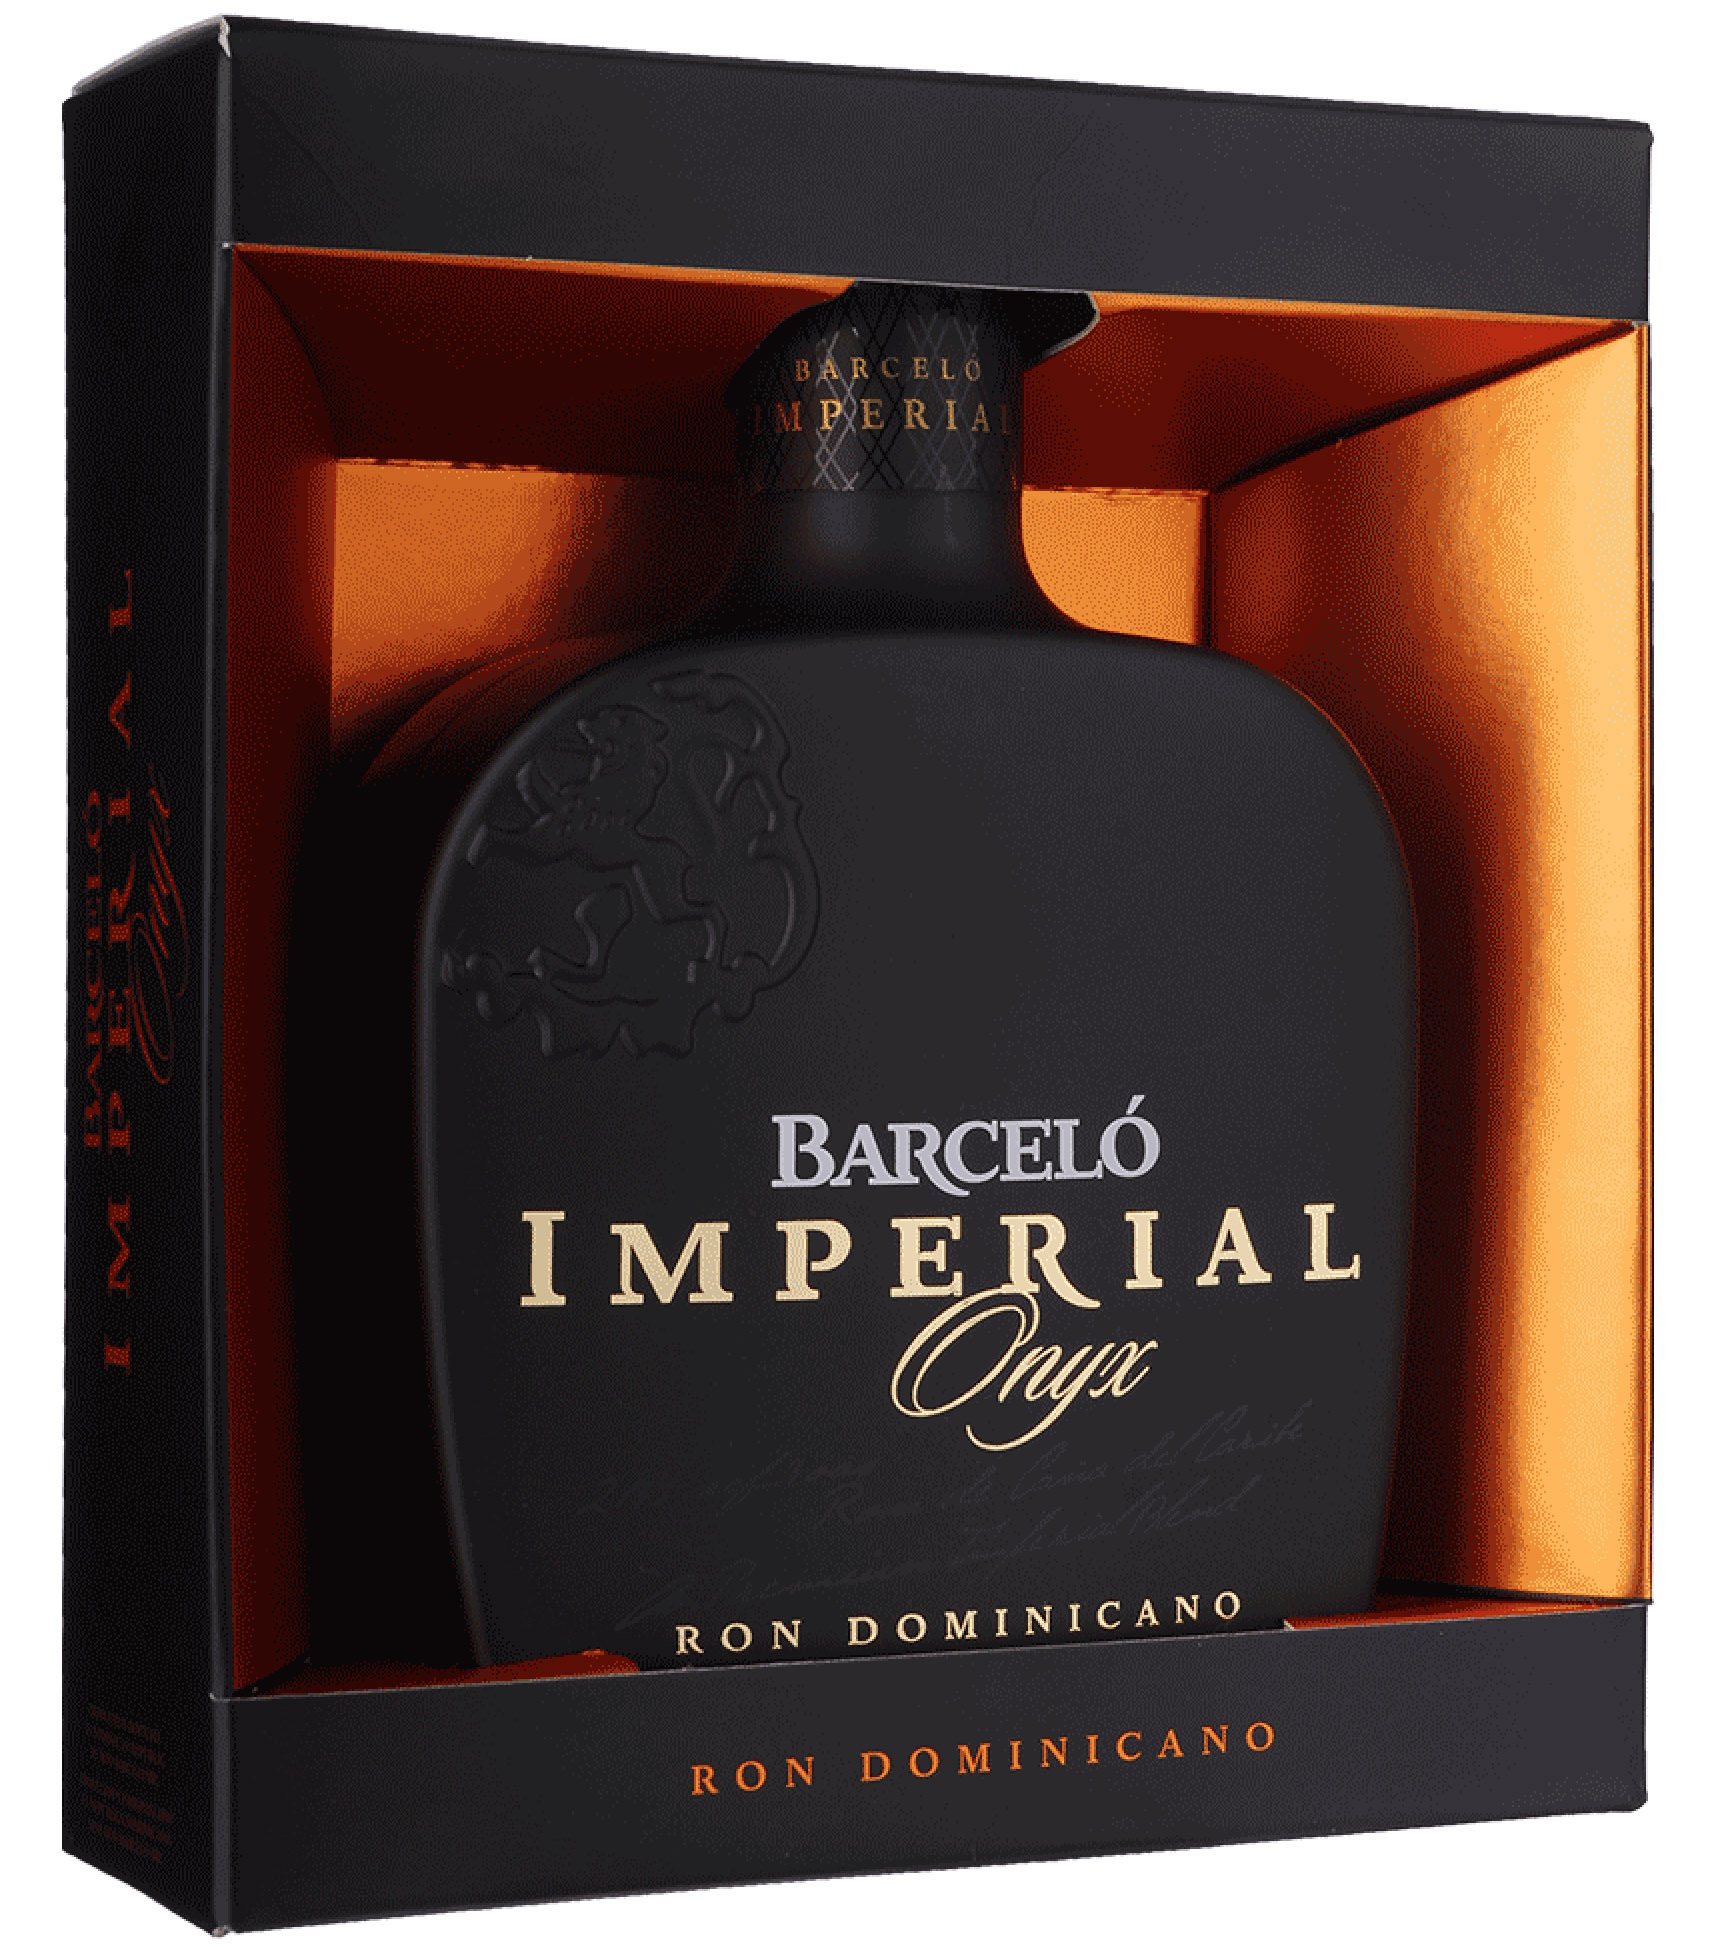 Barceló Imperial Onyx 38% 0,7l (darčekové balenie kazeta)